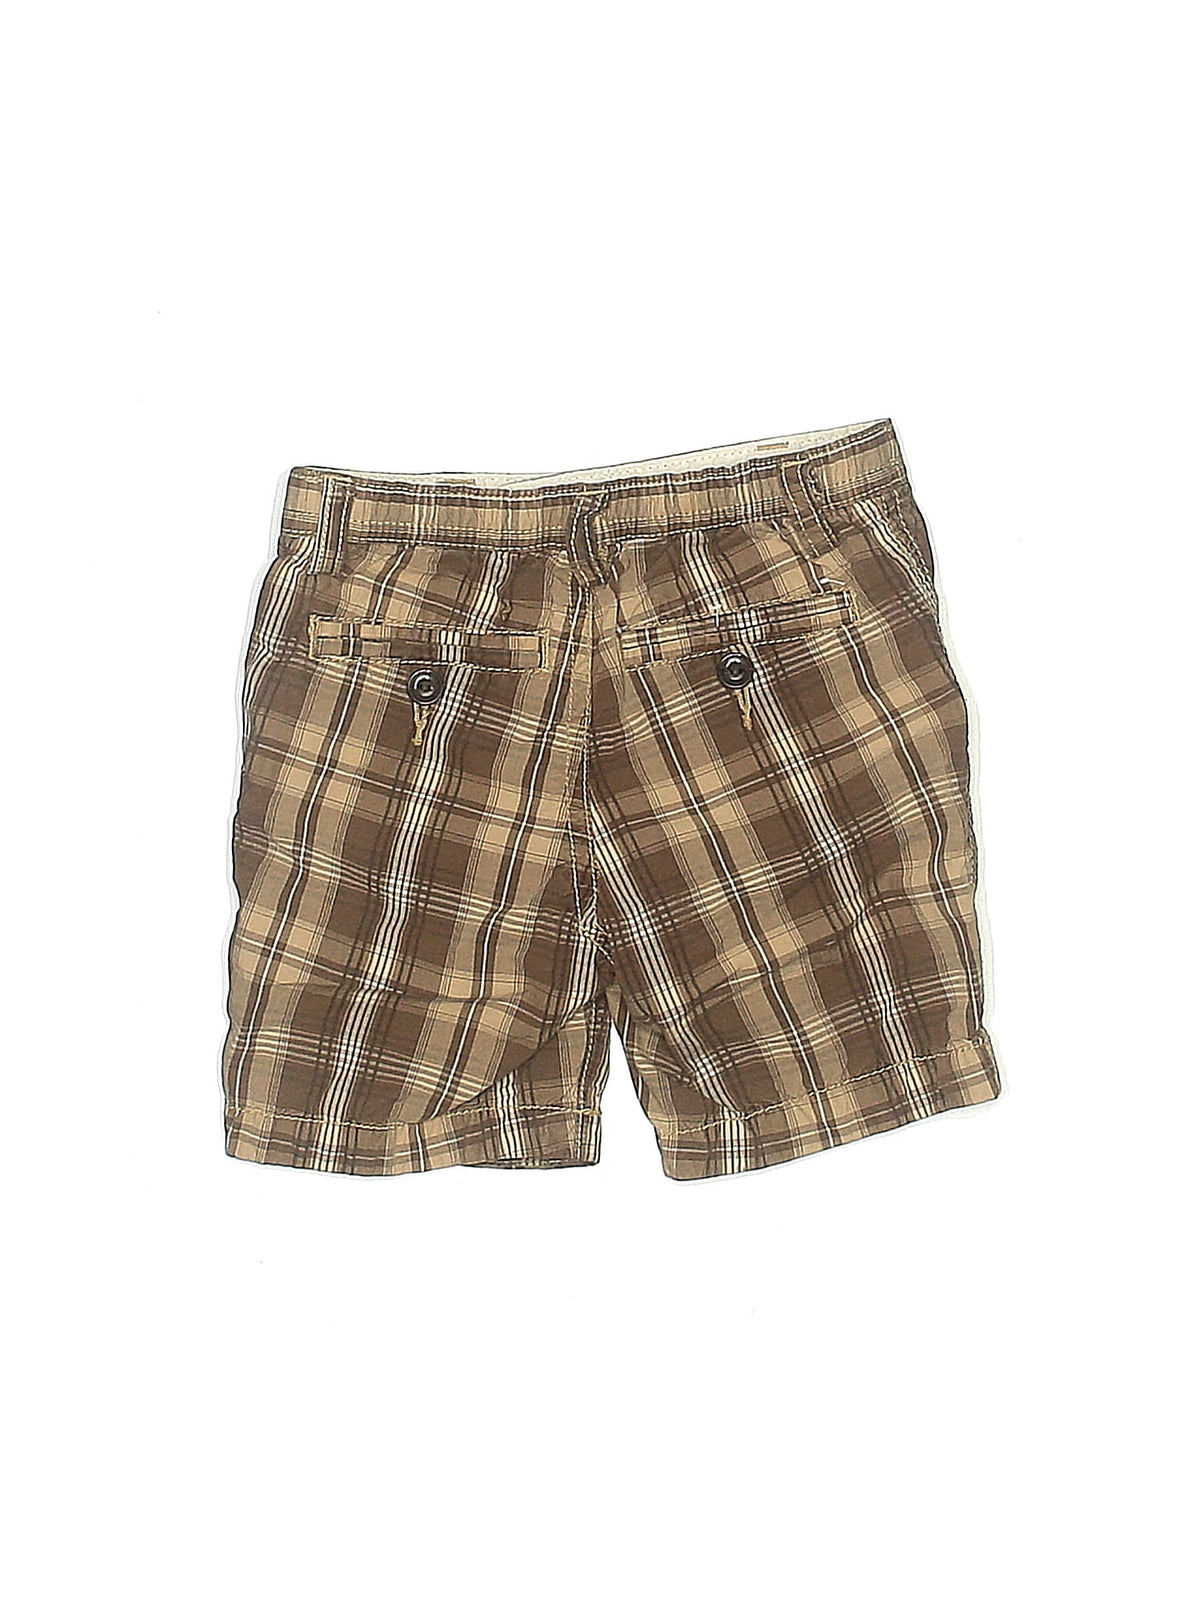 Khaki Shorts size - 6-12 mo